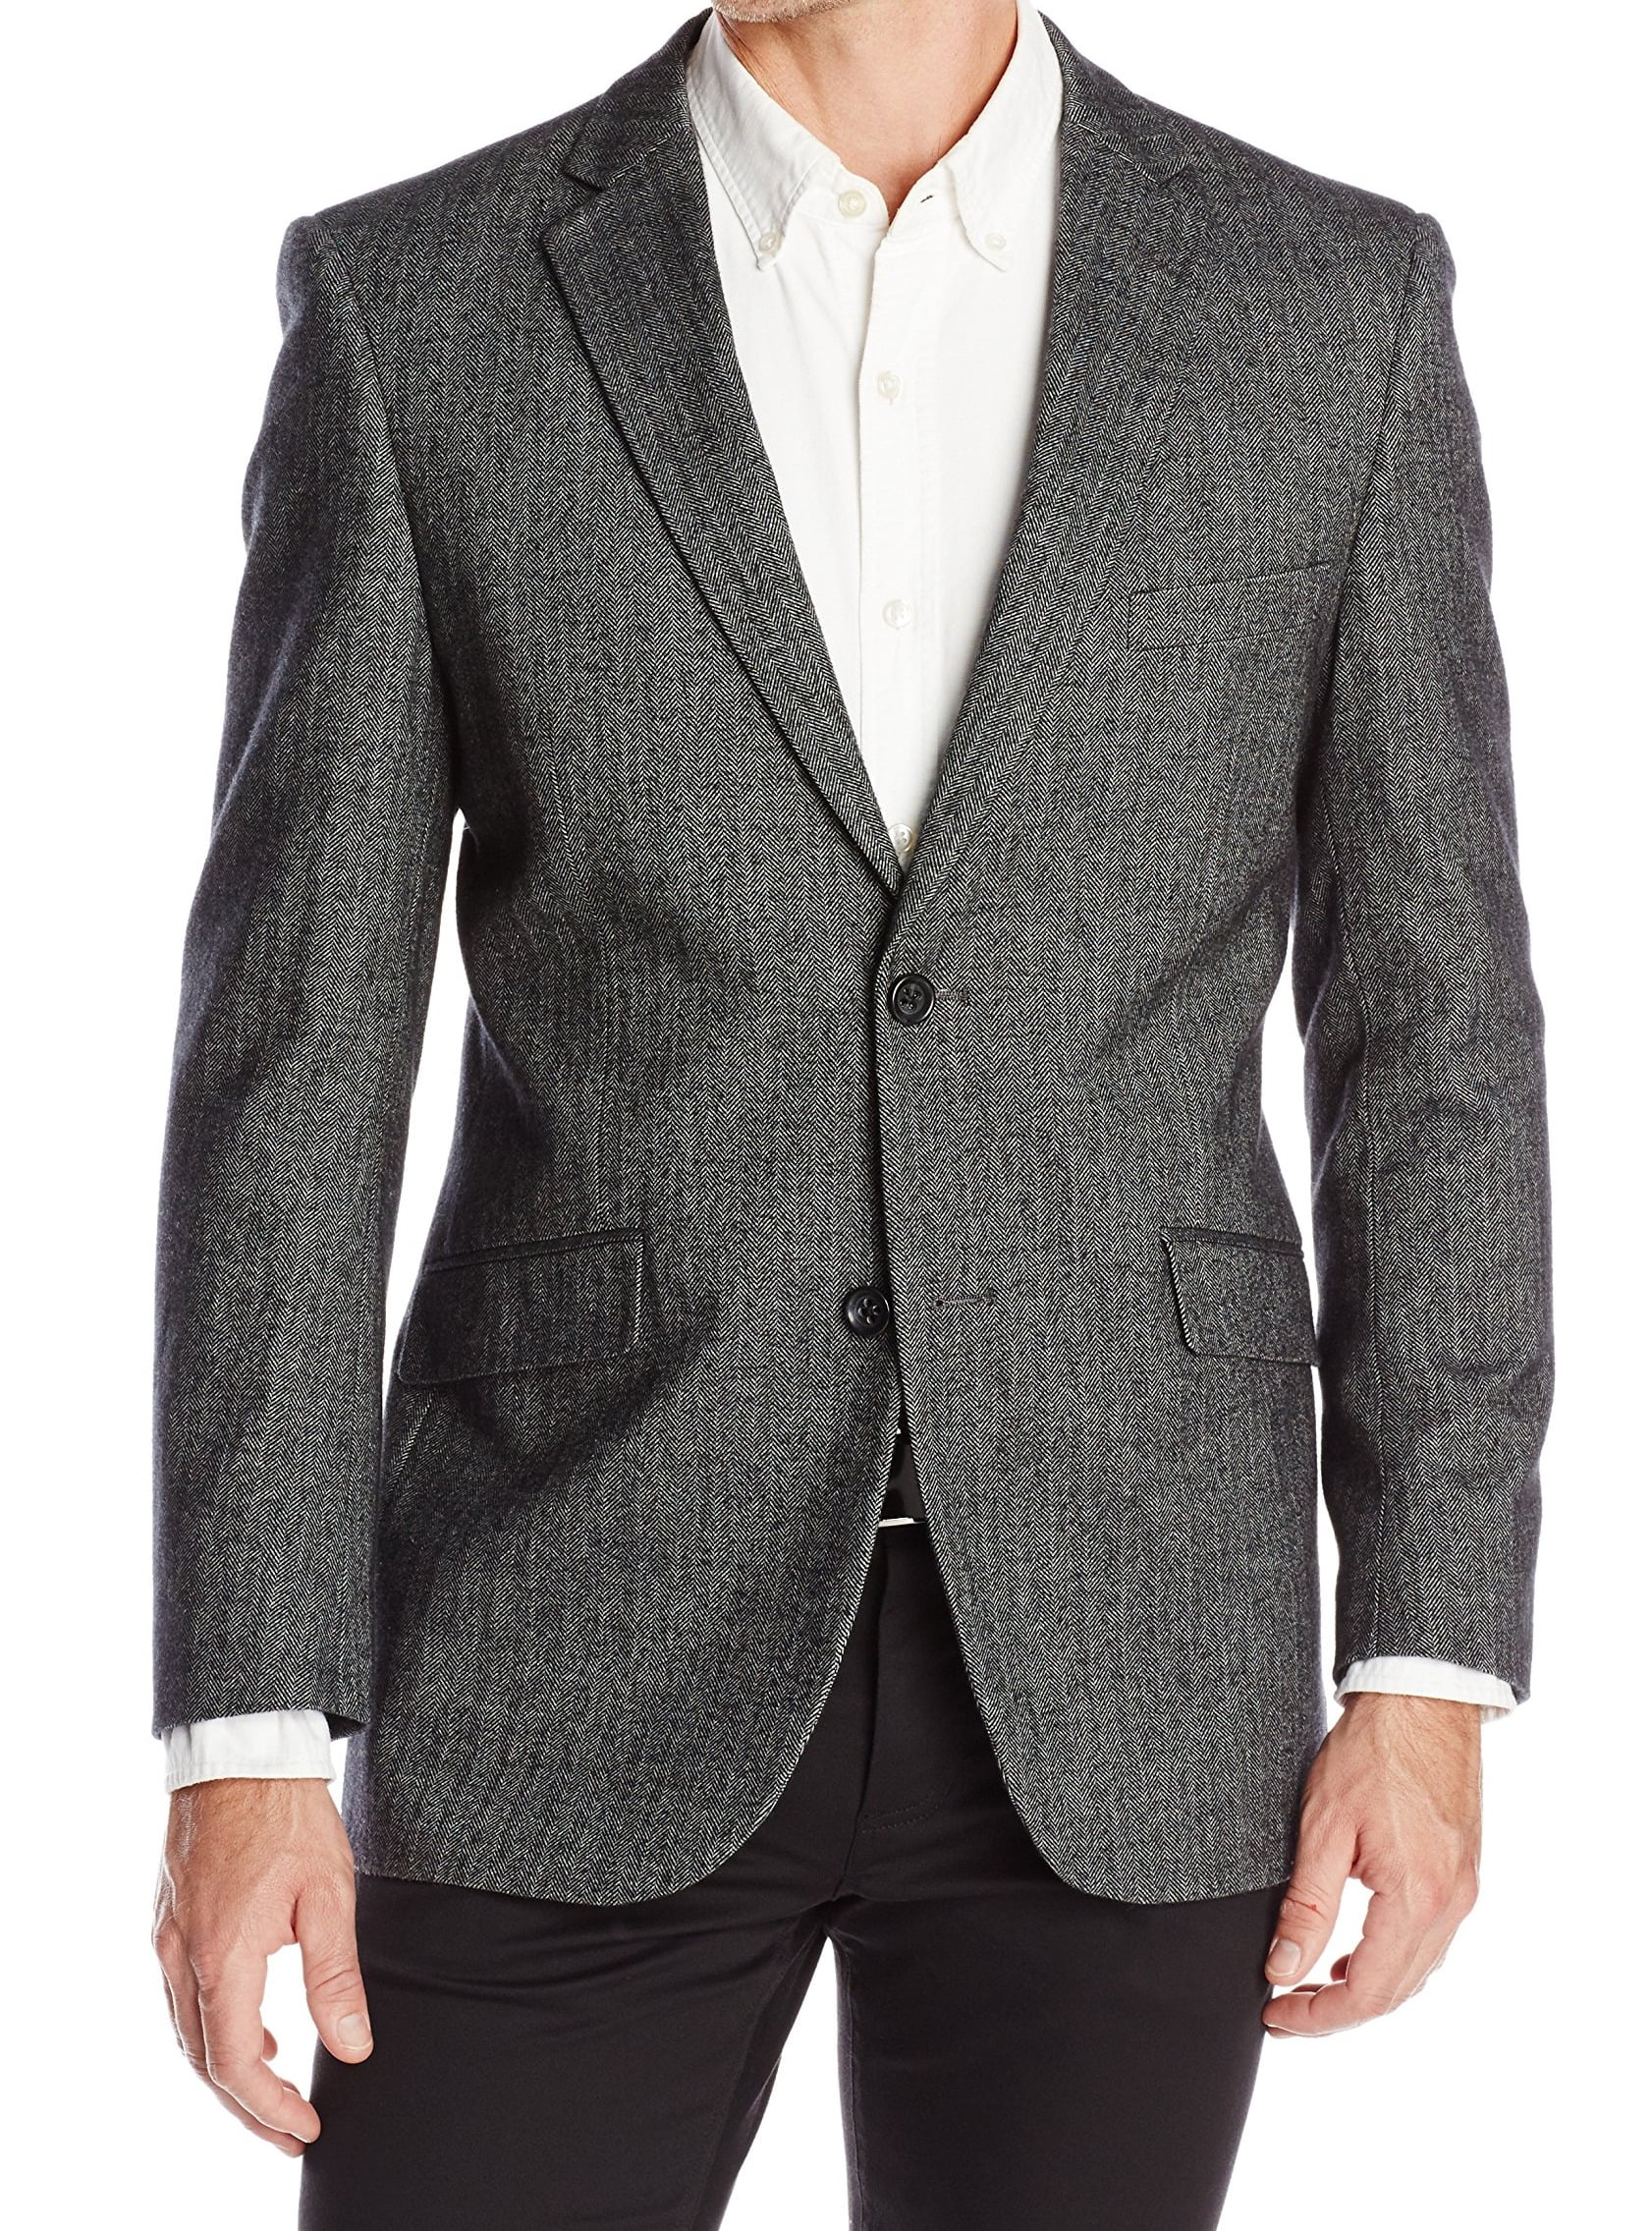 Designer Brand Suits & Suit Separates - Mens Suit Seperates Herringbone ...